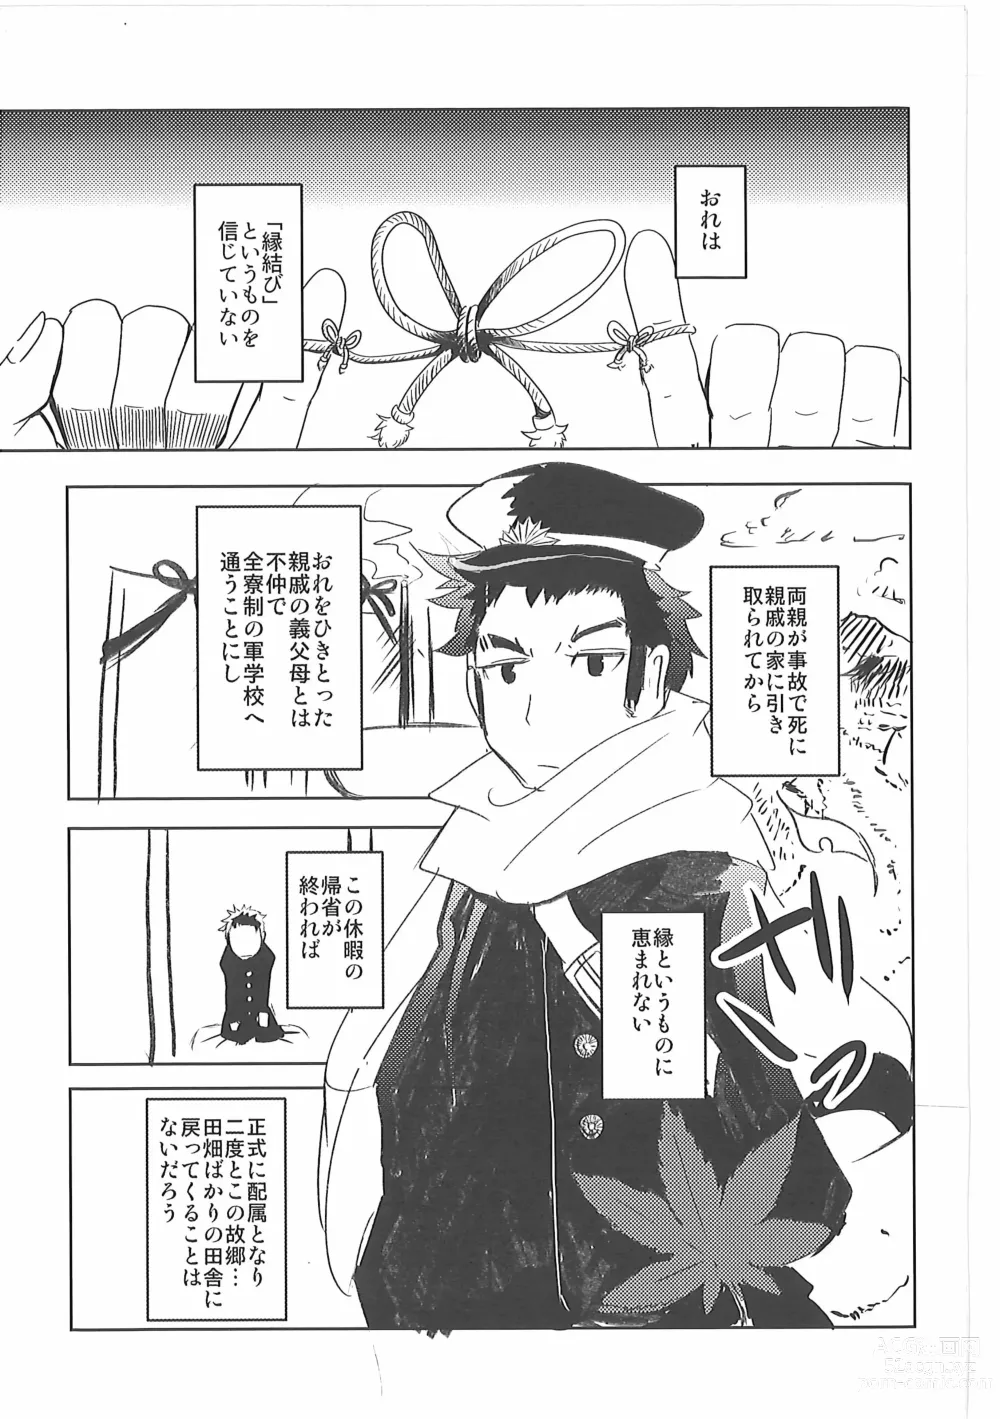 Page 4 of doujinshi Kore mo Goen Toiukoto de